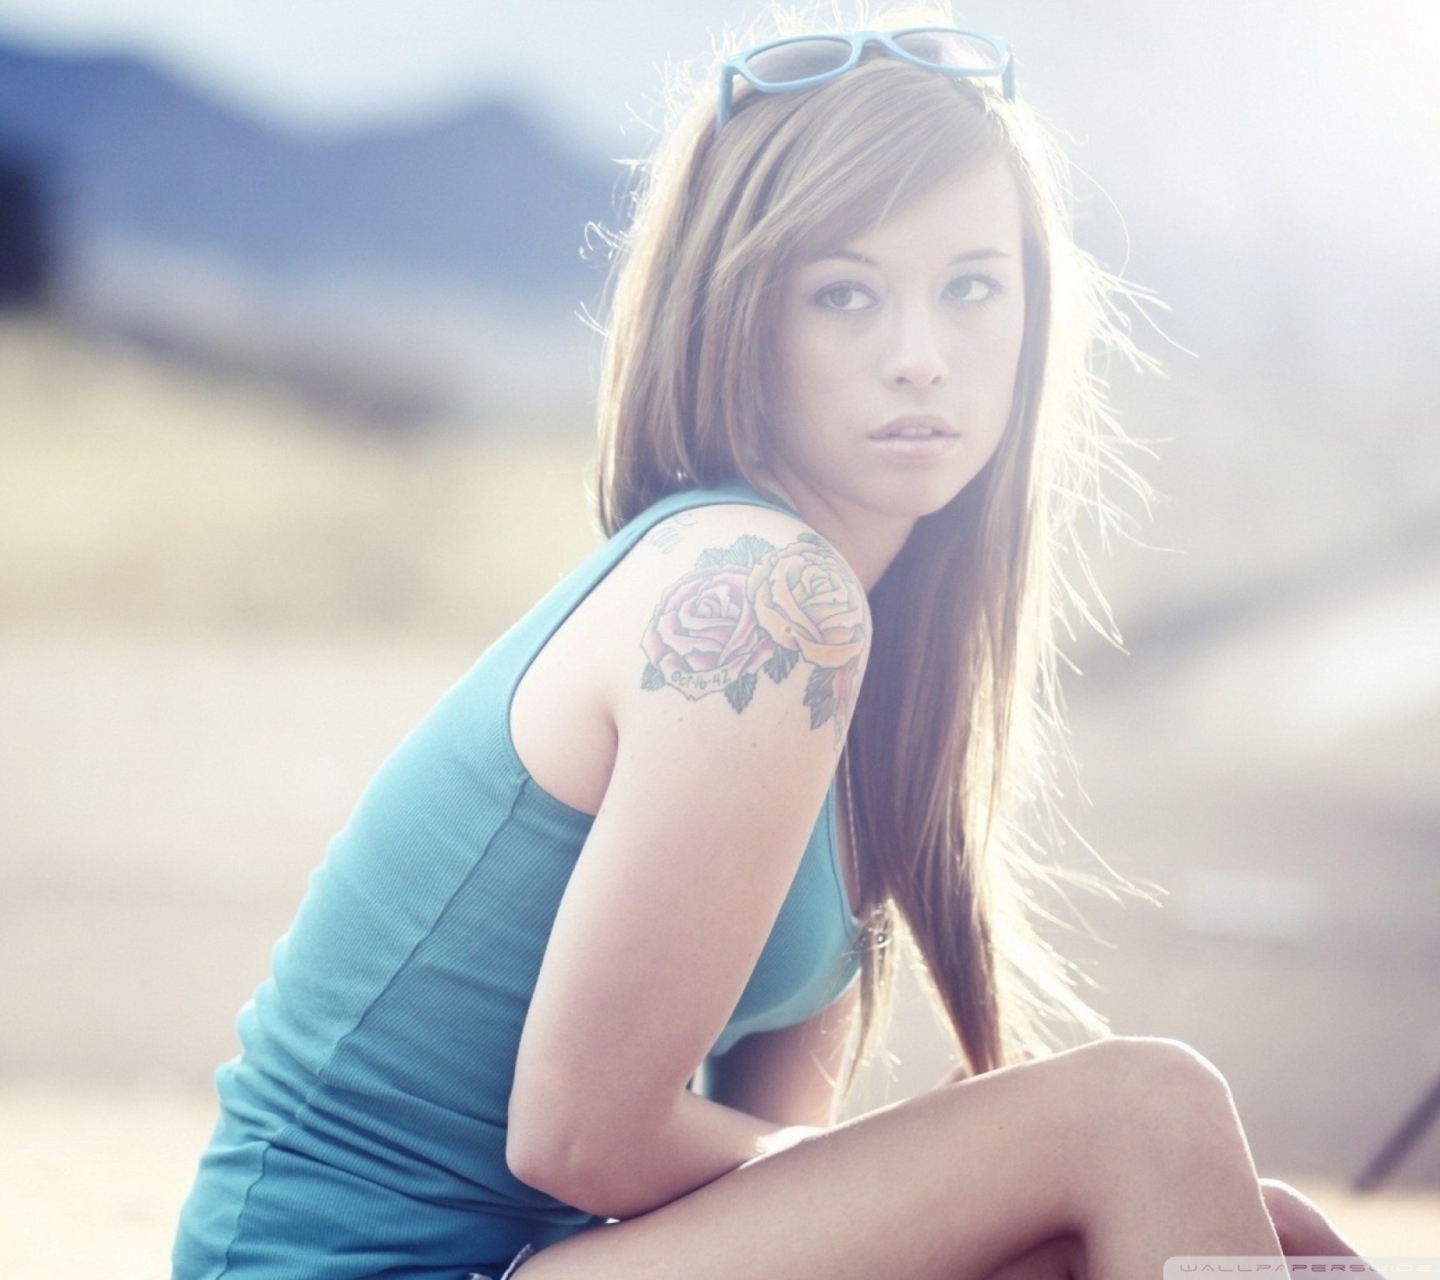 Обои Beautiful Girl With Long Blonde Hair And Rose Tattoo 1440x1280